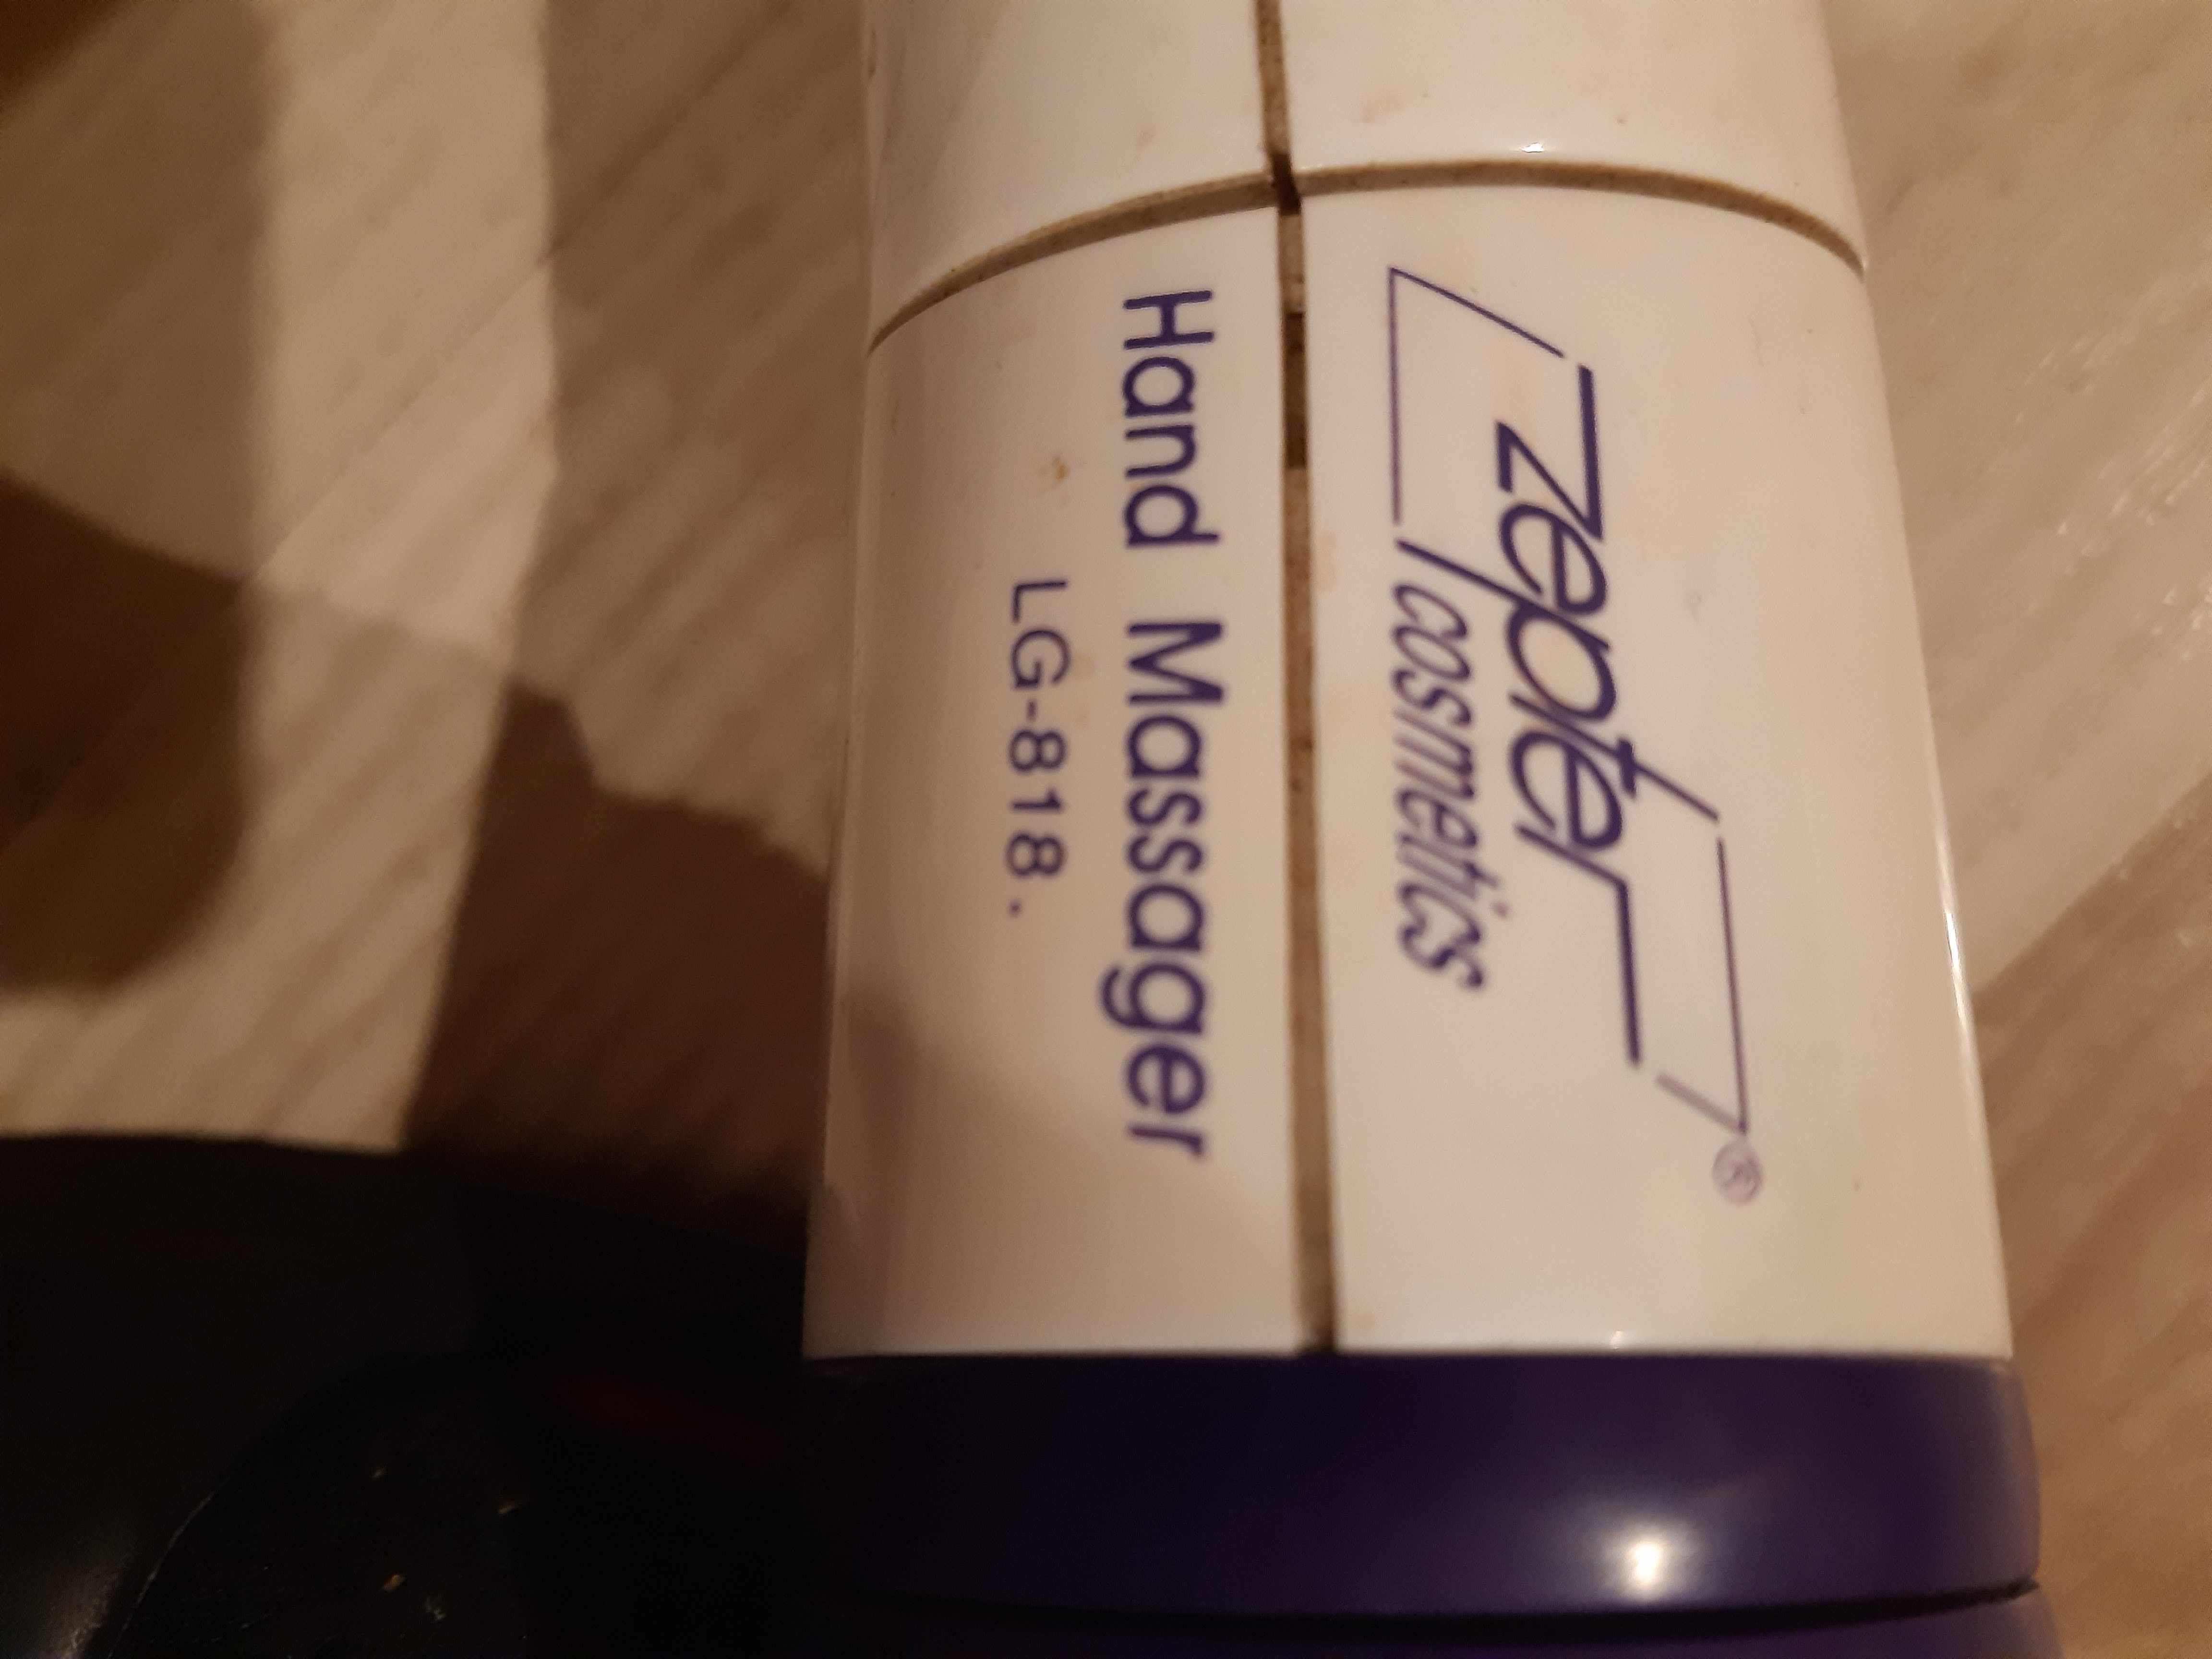 Hand Massager LG-818 Zepter cosmetics.